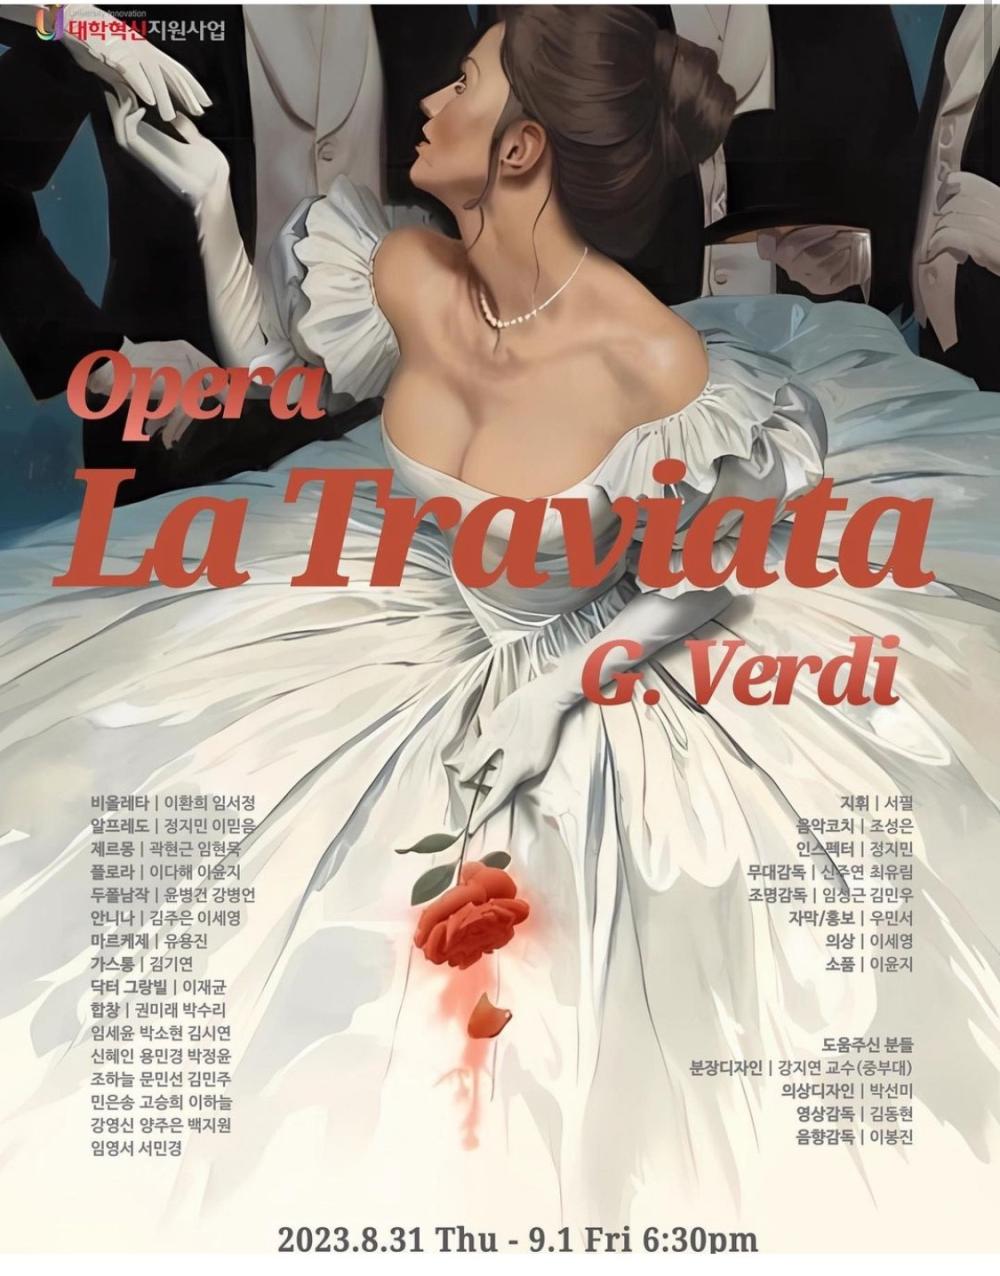 뷰티패션비즈니스학전공 <La Traviata> 뮤지컬 분장 실습 참여 사진1